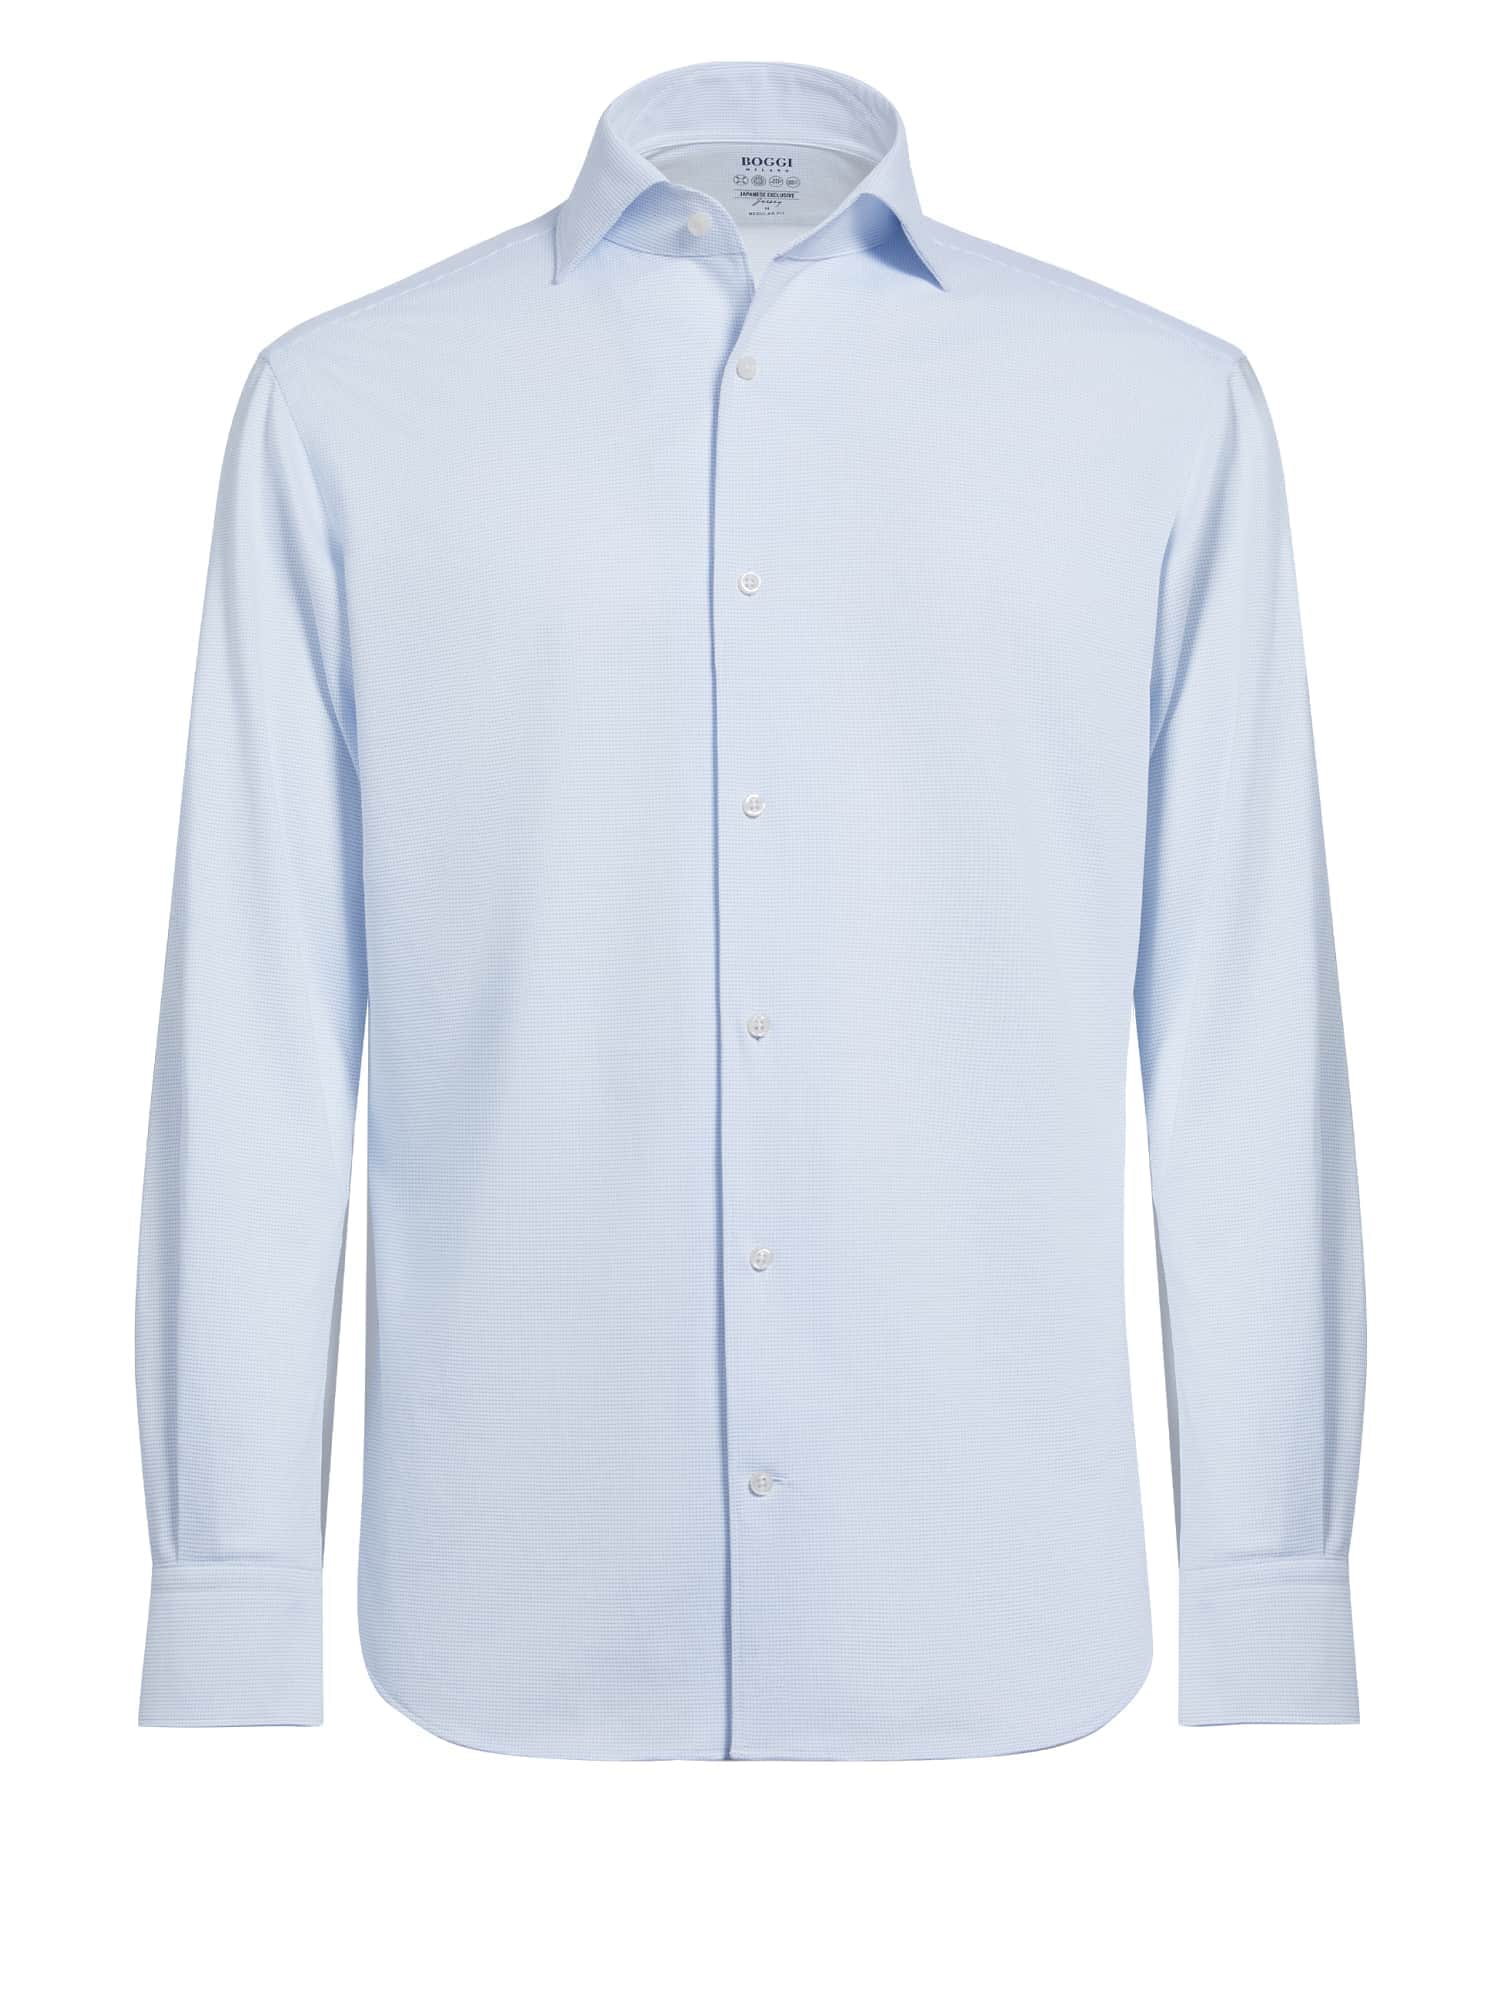 Boggi Milano Dalykinio stiliaus marškiniai šviesiai mėlyna